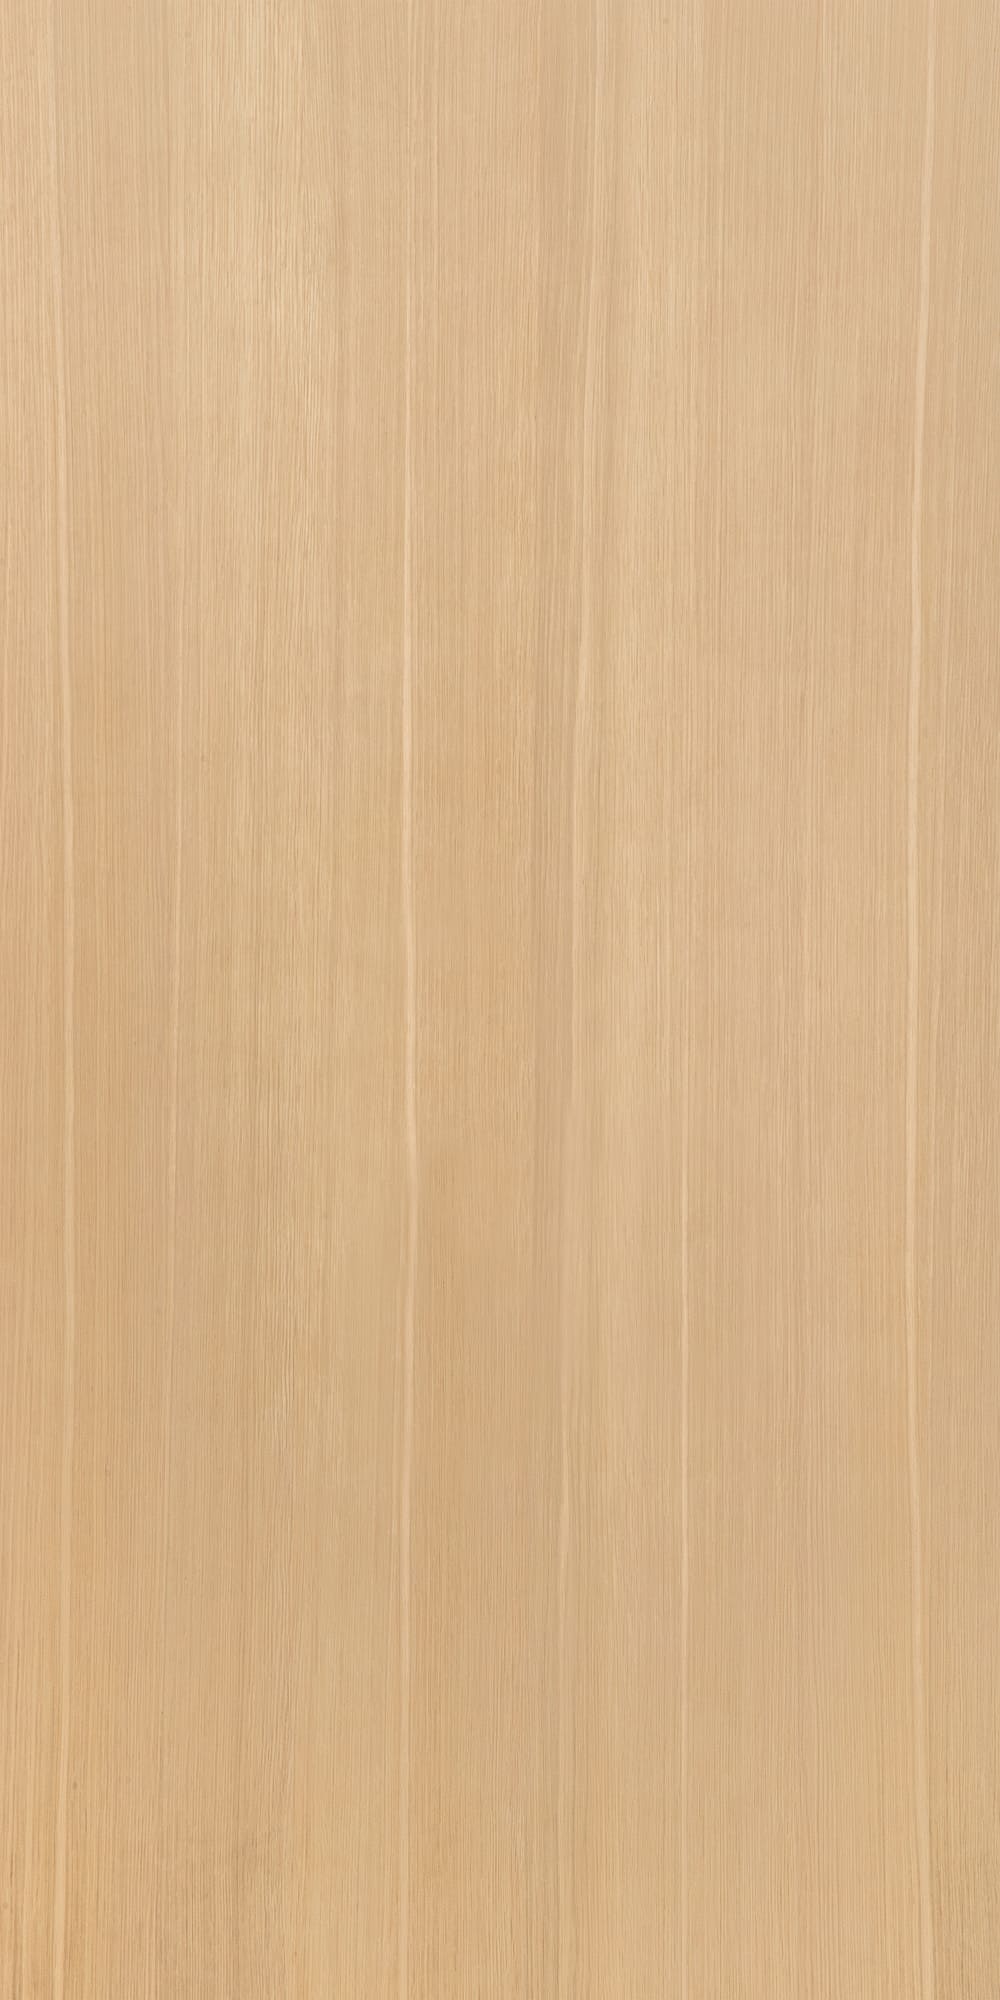 SJ-8554~3G 天然白橡木直紋自然拼塗裝板